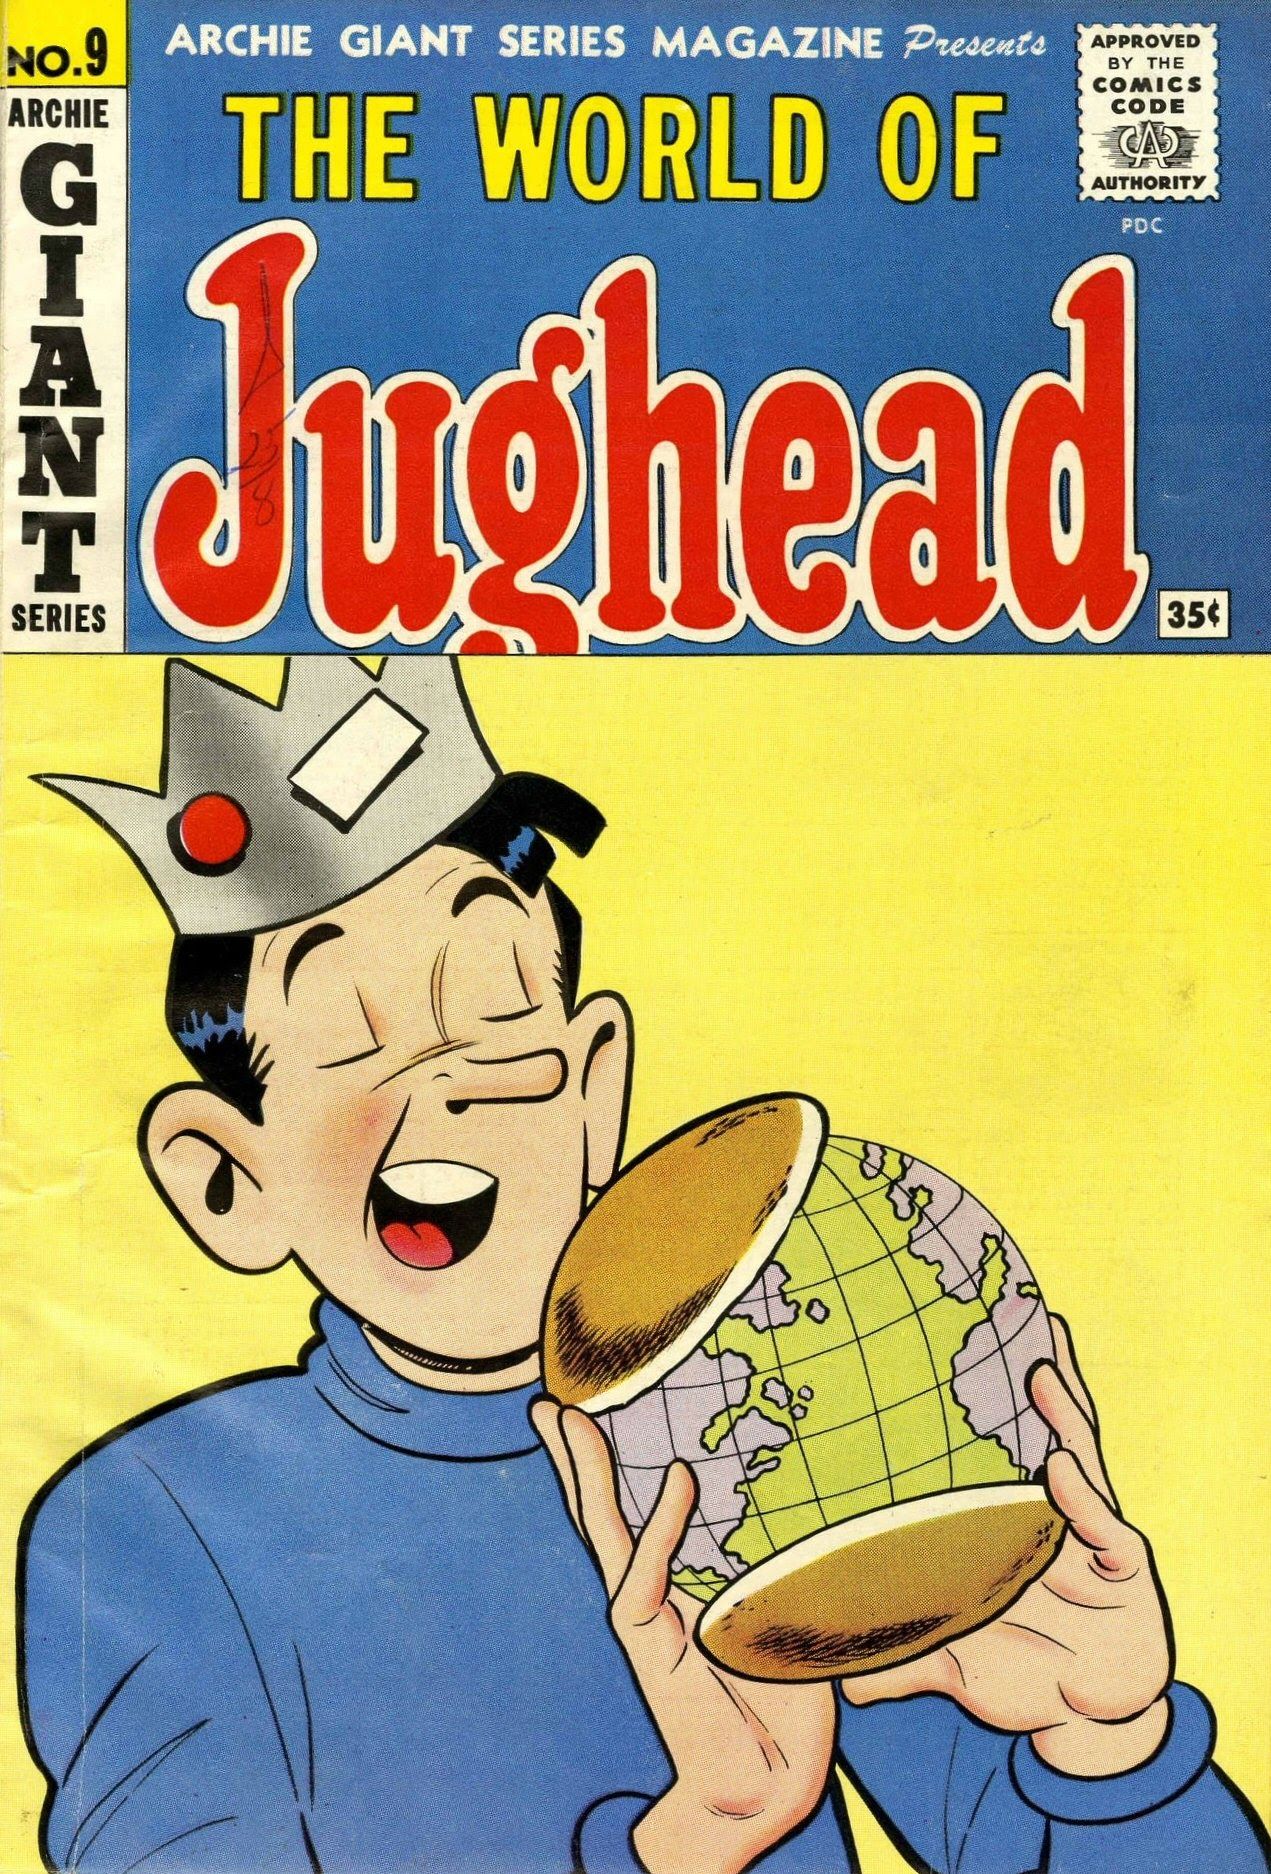 A capa do World of Jughead, parte da Giant Series Magazine de Archie